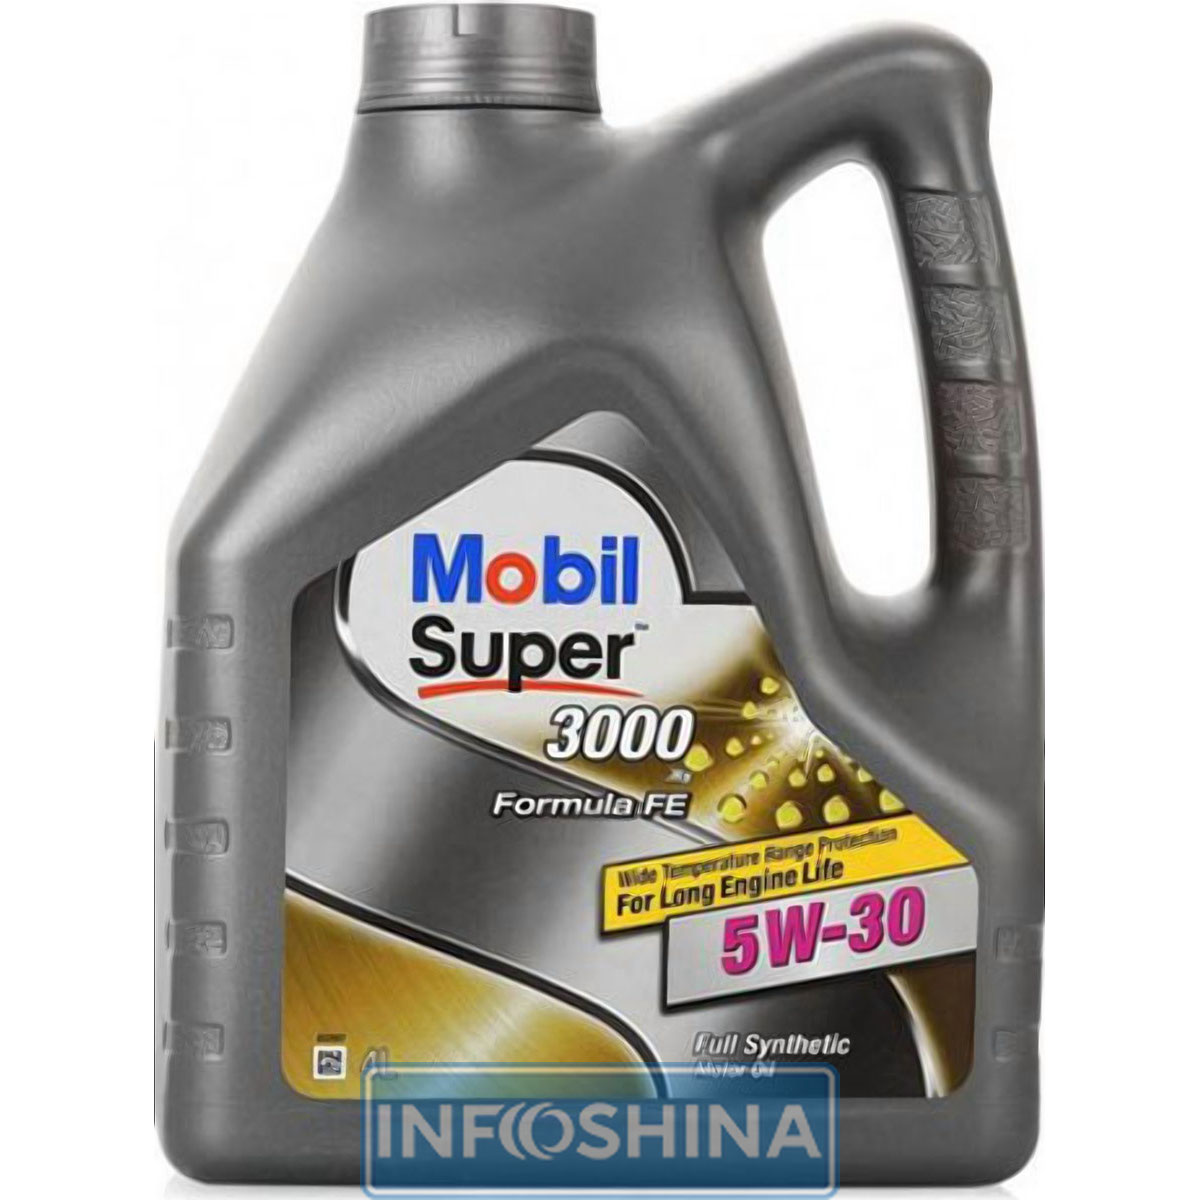 Купить масло Mobil Super 3000 x1 Formula FE 5W-30 (4л)